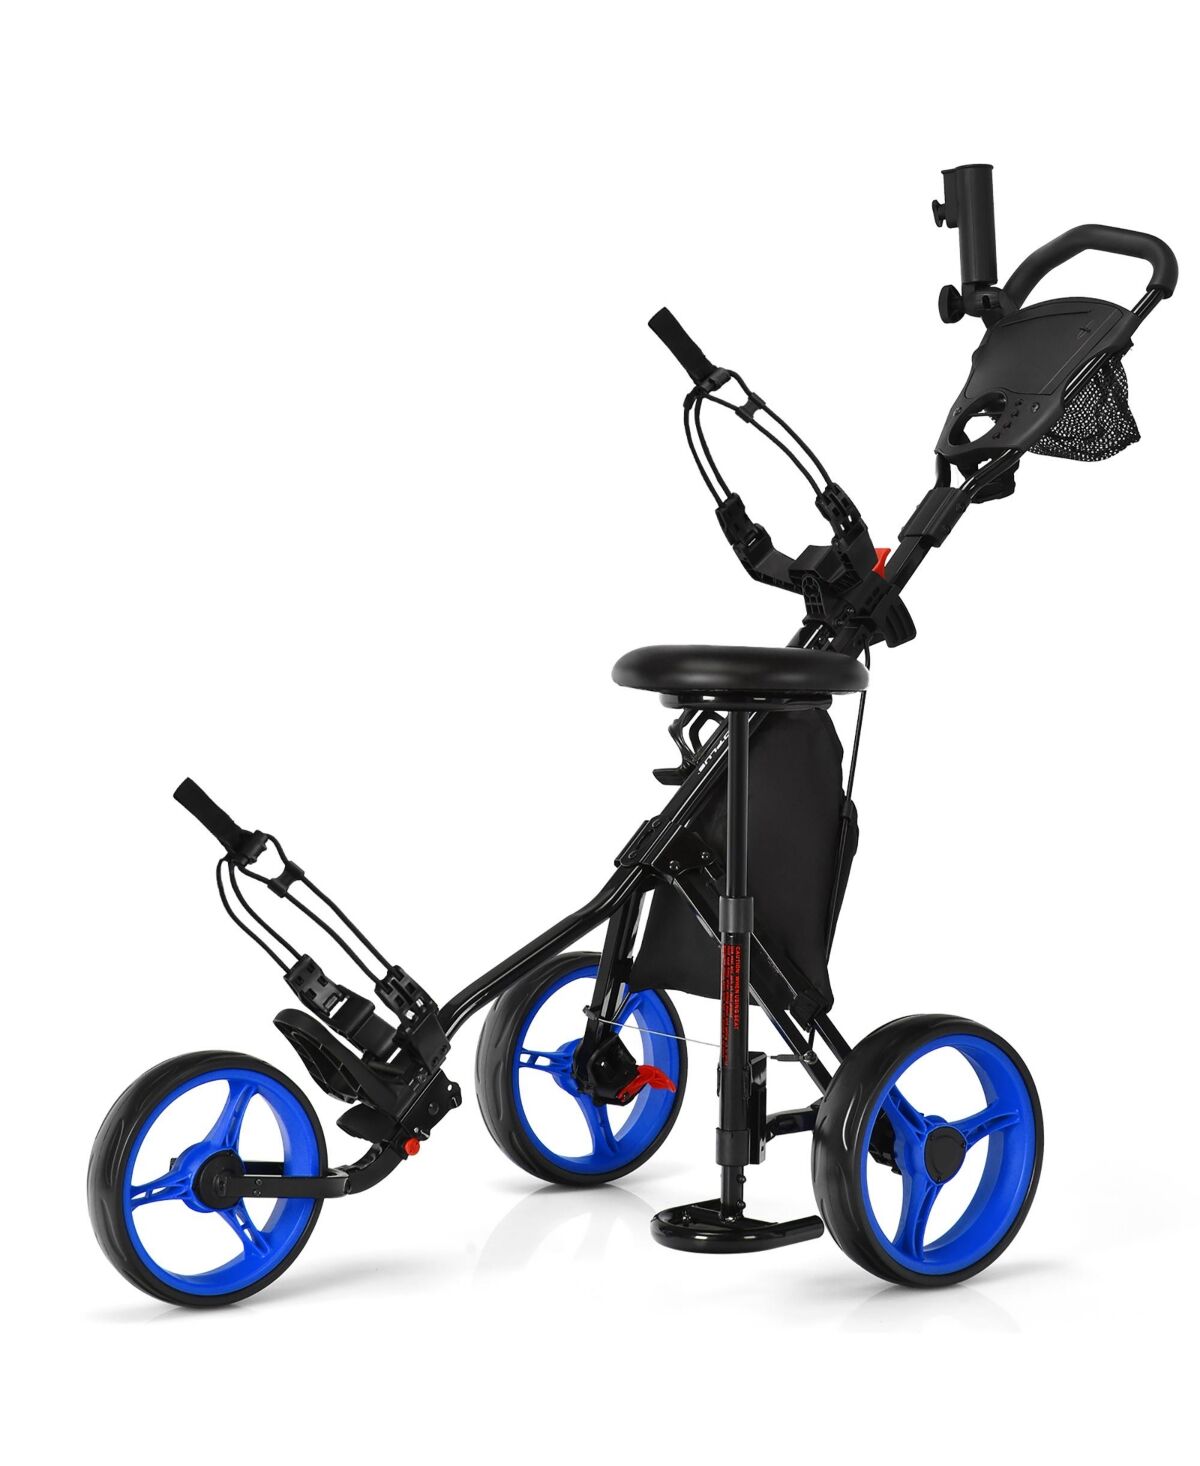 Costway Folding 3 Wheels Golf Push Cart W/Seat Scoreboard Adjustable Handle - Blue